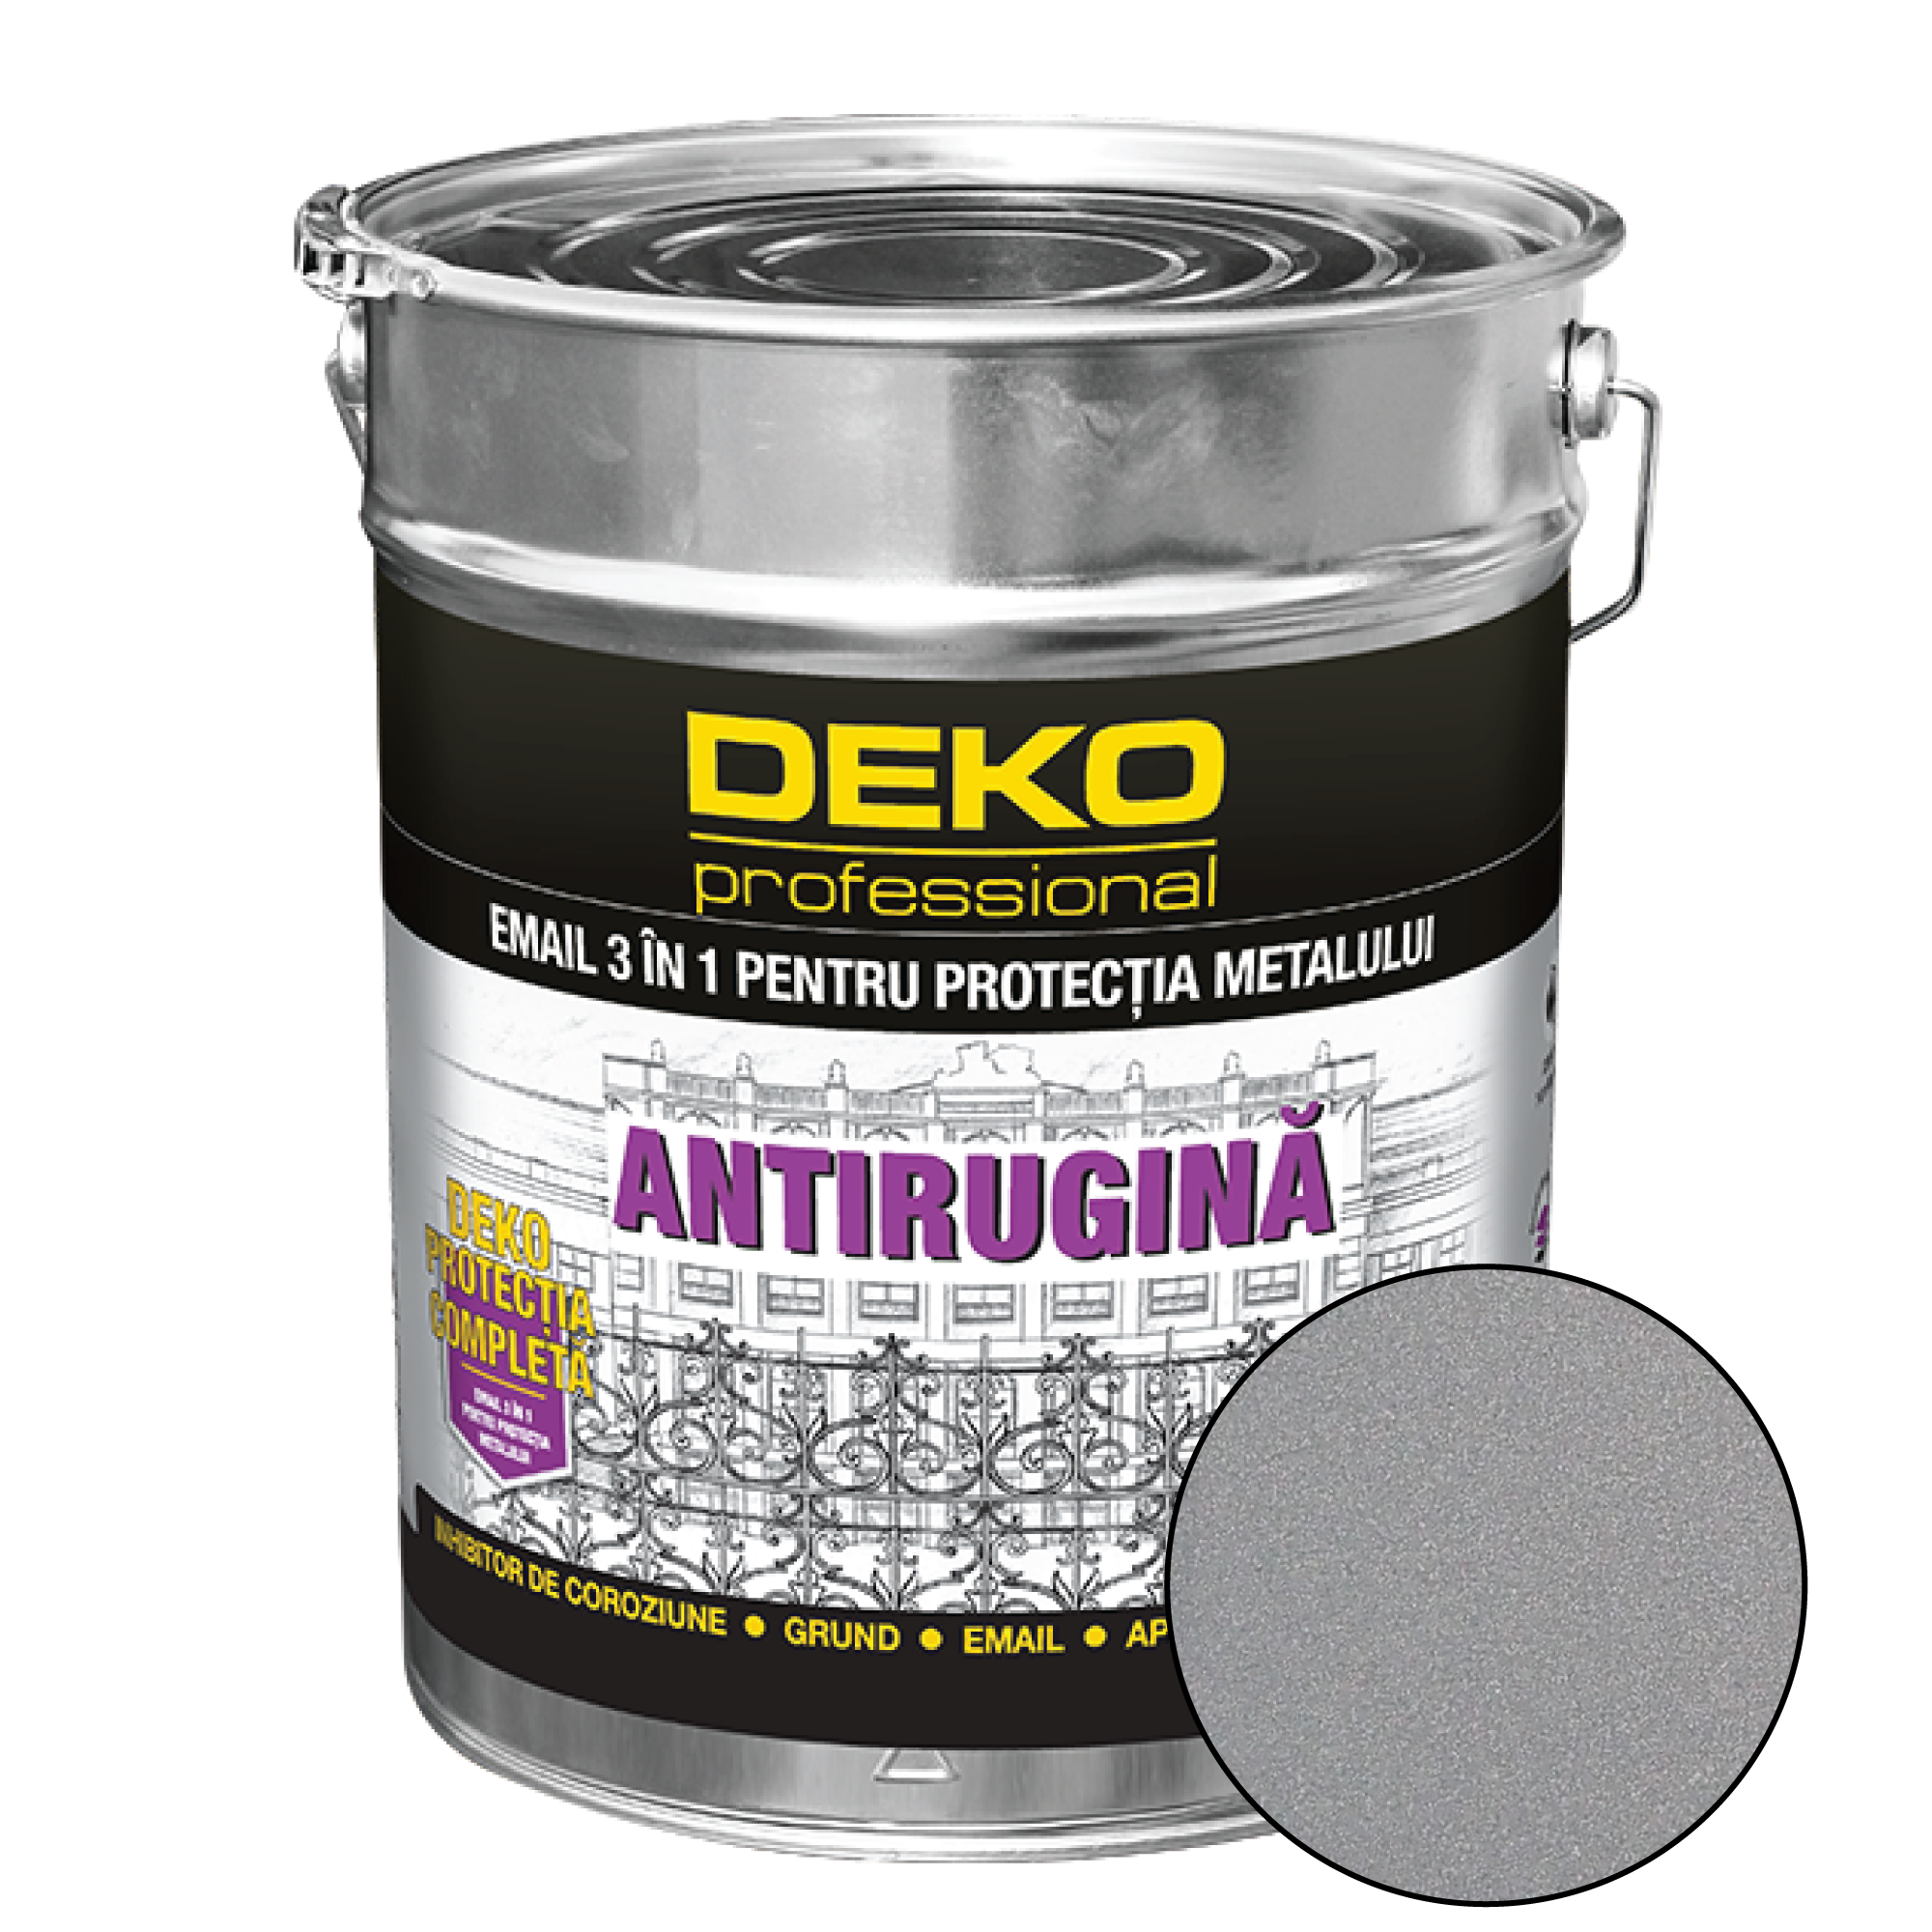 Deko Protectie Completa 3 in 1 Email, argintiu, 20 kg acoperis